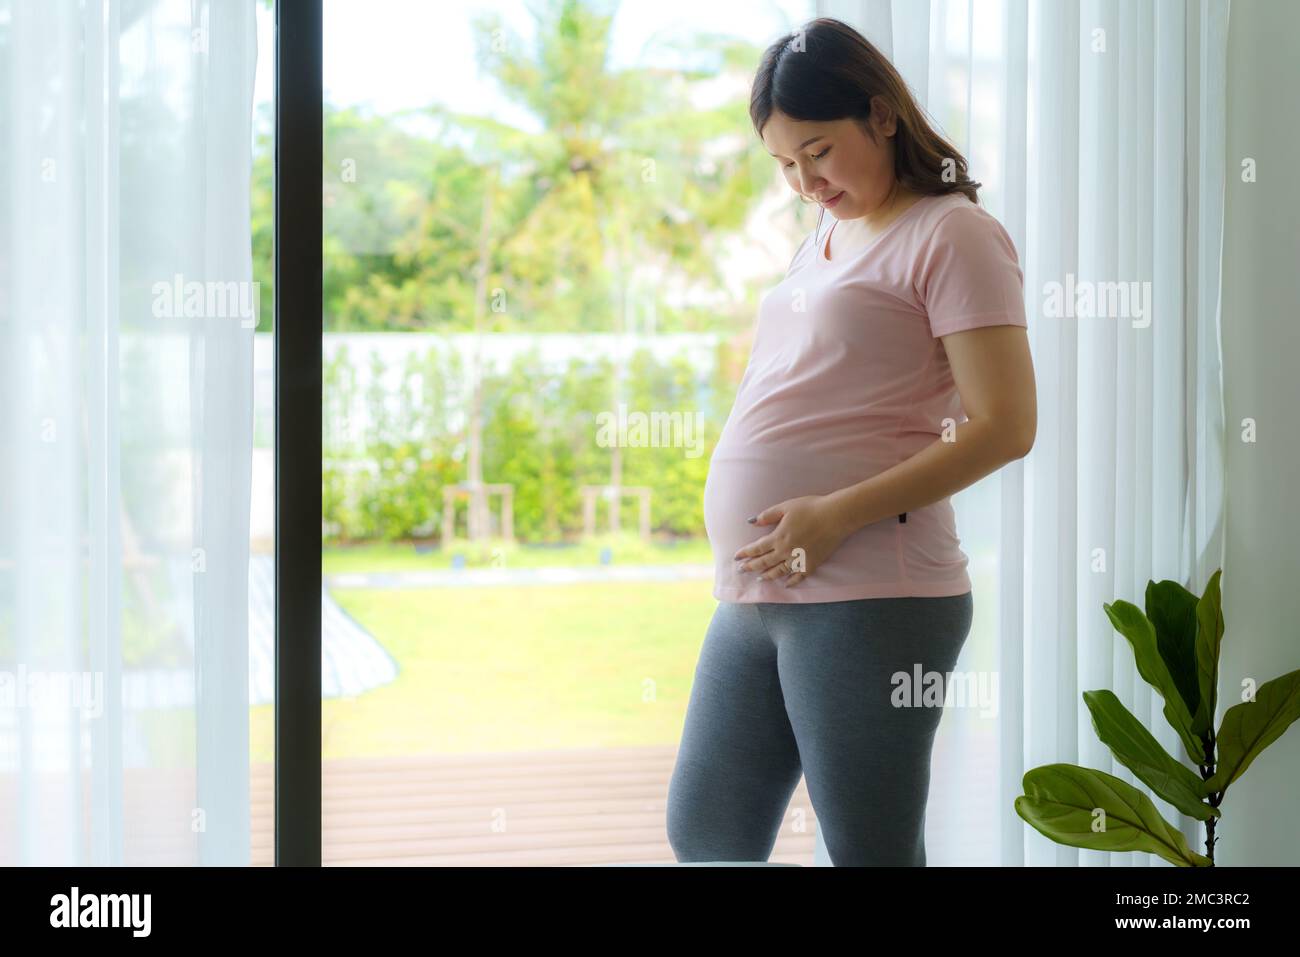 Schwangerschaft, Menschen Ruhe und Erwartung Konzept - Asiatische, lächelnde, glückliche schwangere Frau, die am Fenster steht und ihren Bauch zu Hause berührt. Stockfoto